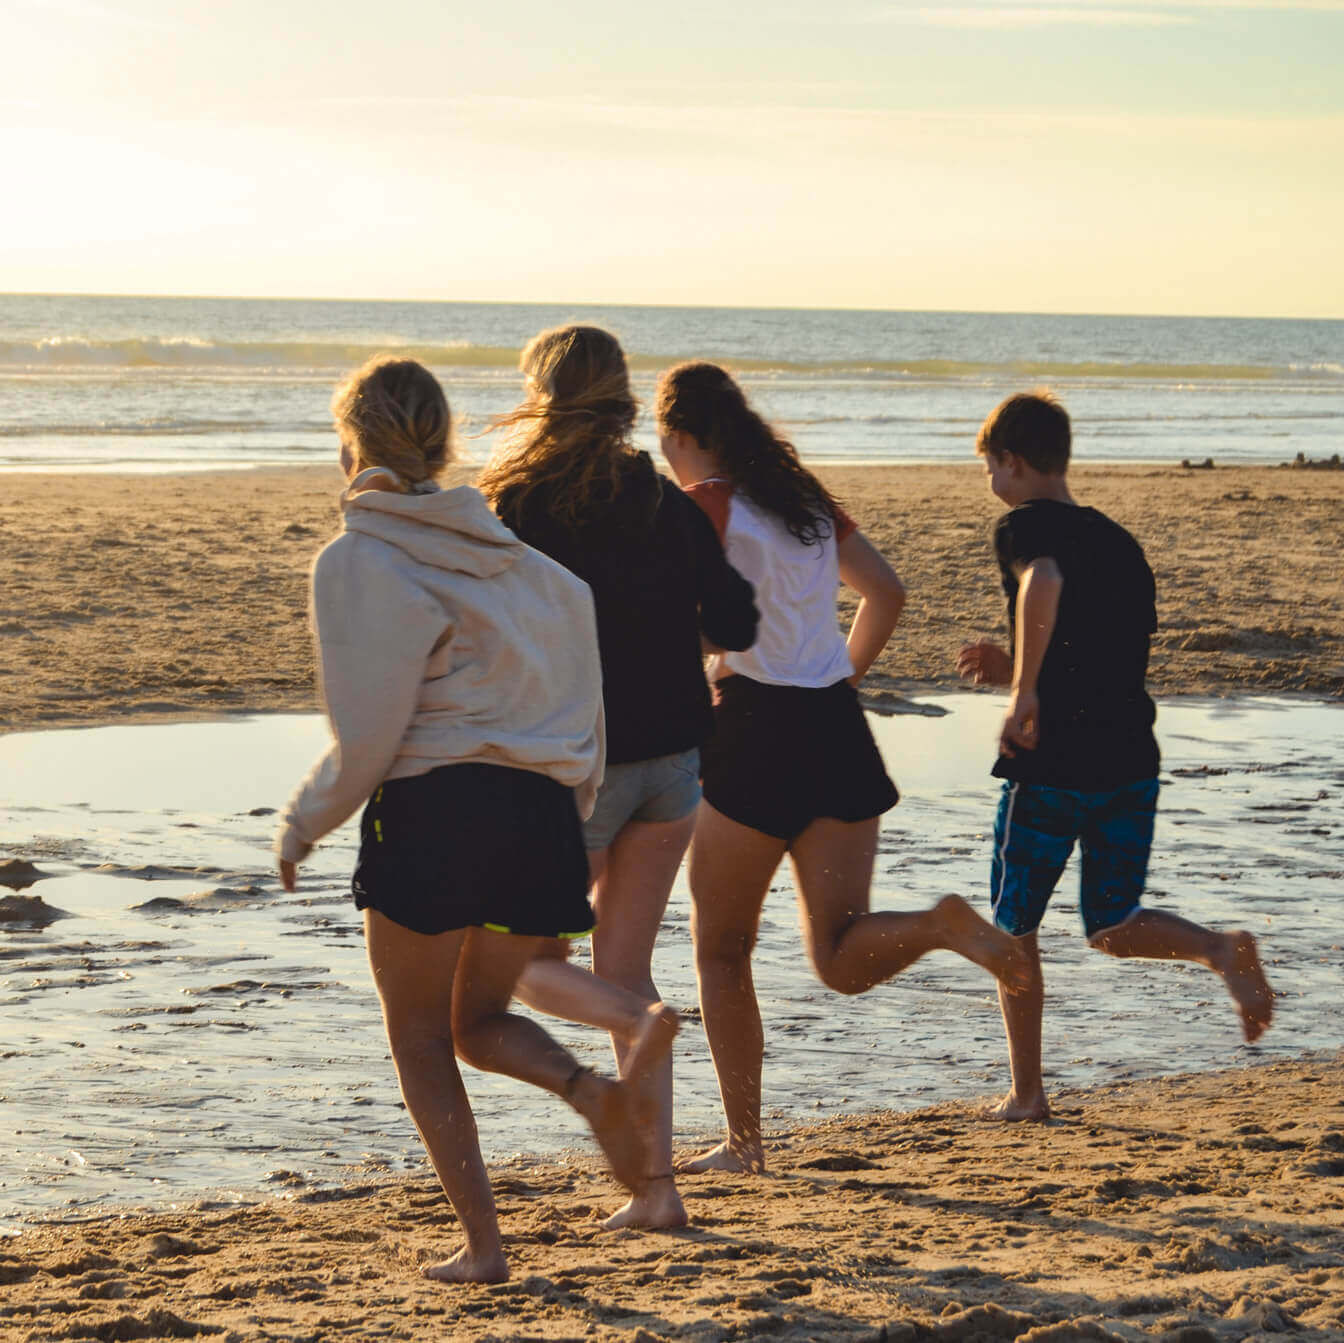 Während des Sonnenuntergangs rennen fünf Jugendliche über den Strand in Richtung des Meeres.